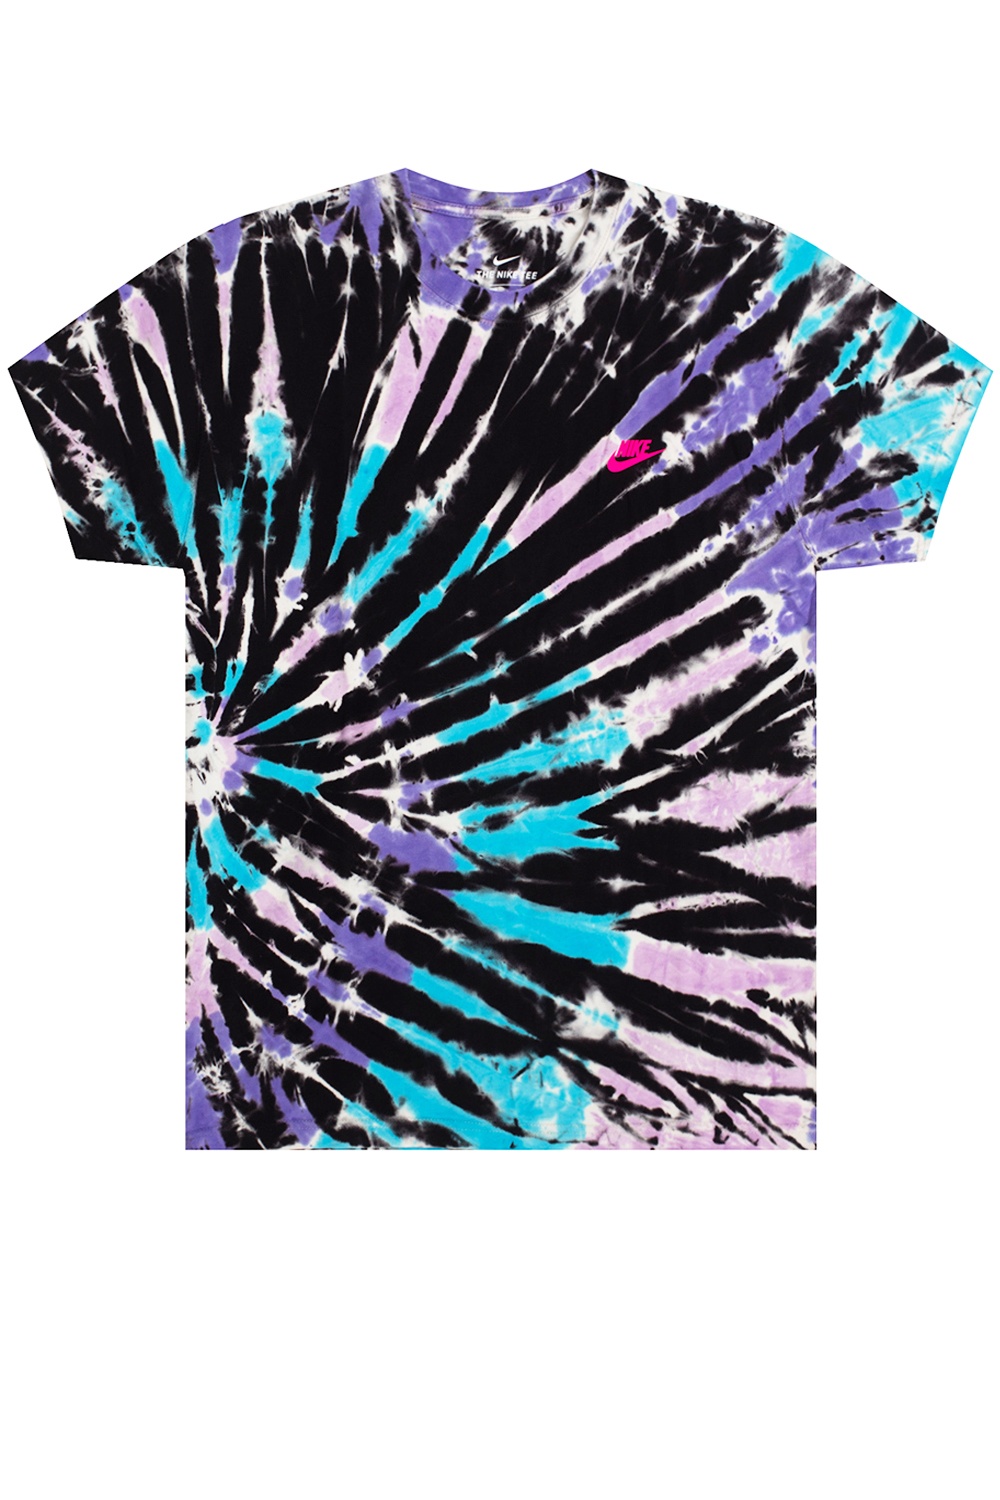 T Shirt With Logo Nike Gov Us - purple nike shirt roblox